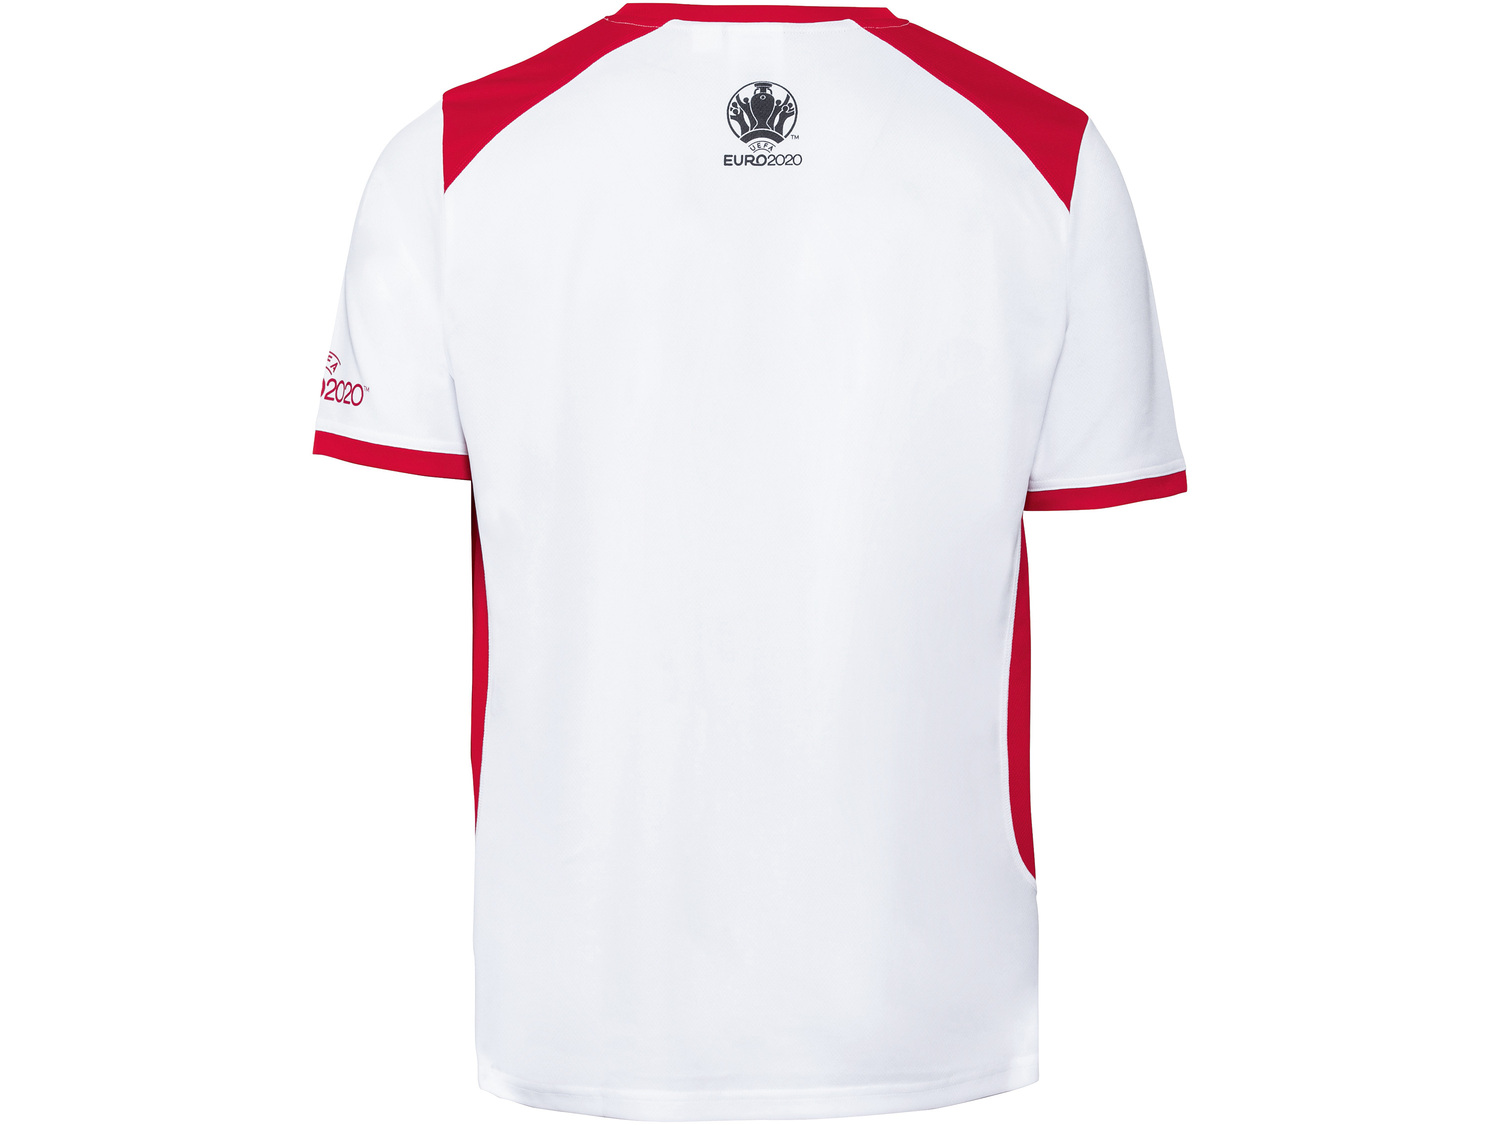 Funkcyjna koszulka piłkarska męska Oeko Tex, cena 21,99 PLN 
- rozmiary: S-XXL
Opis

- ...